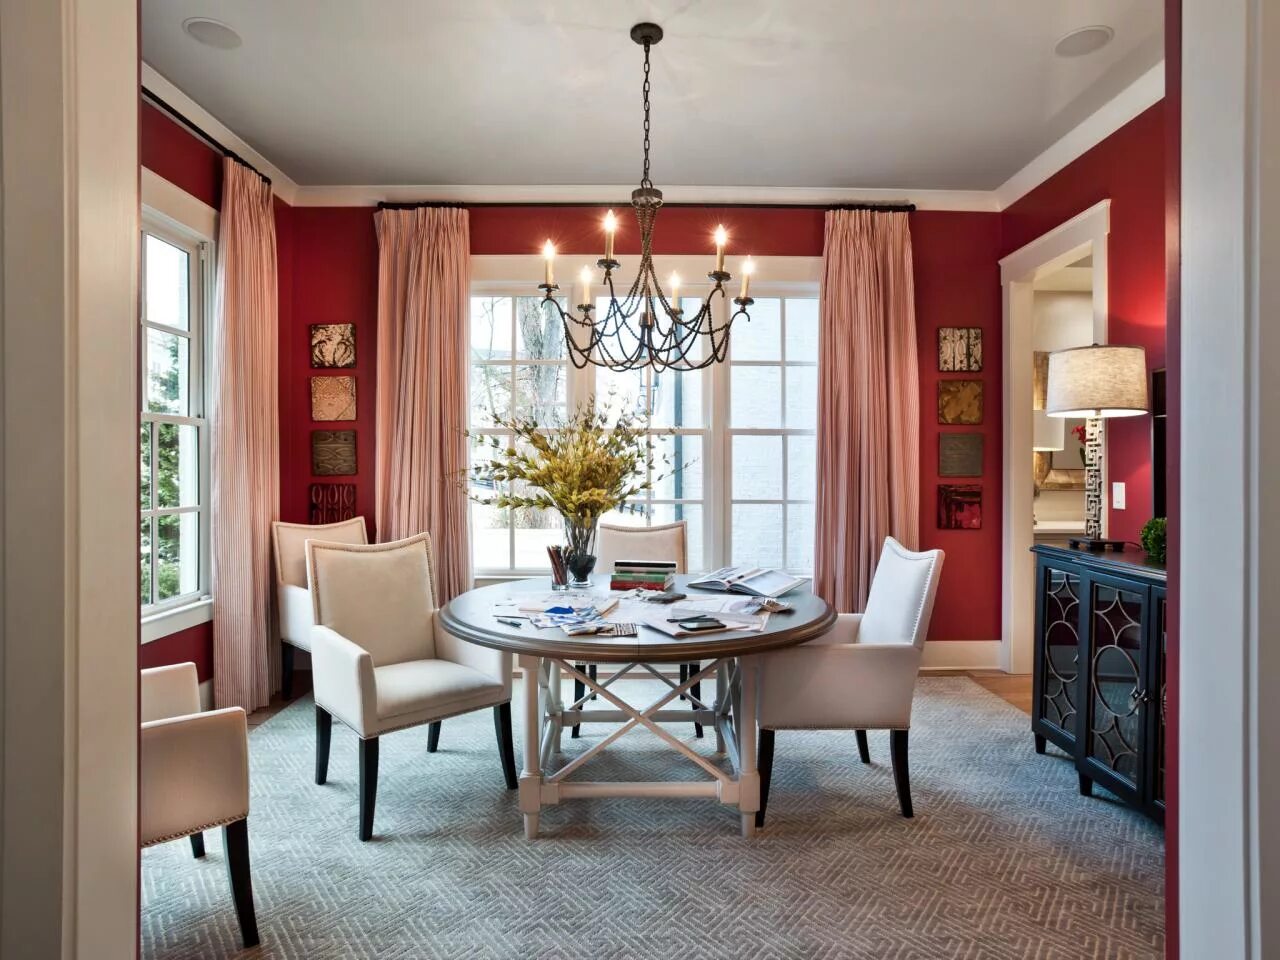 Bedroom dining room. Красные шторы в интерьере. Терракотовый цвет в интерьере. Терракотовый цвет стен в интерьере. Терракотовый цвет в интерьере кухни.